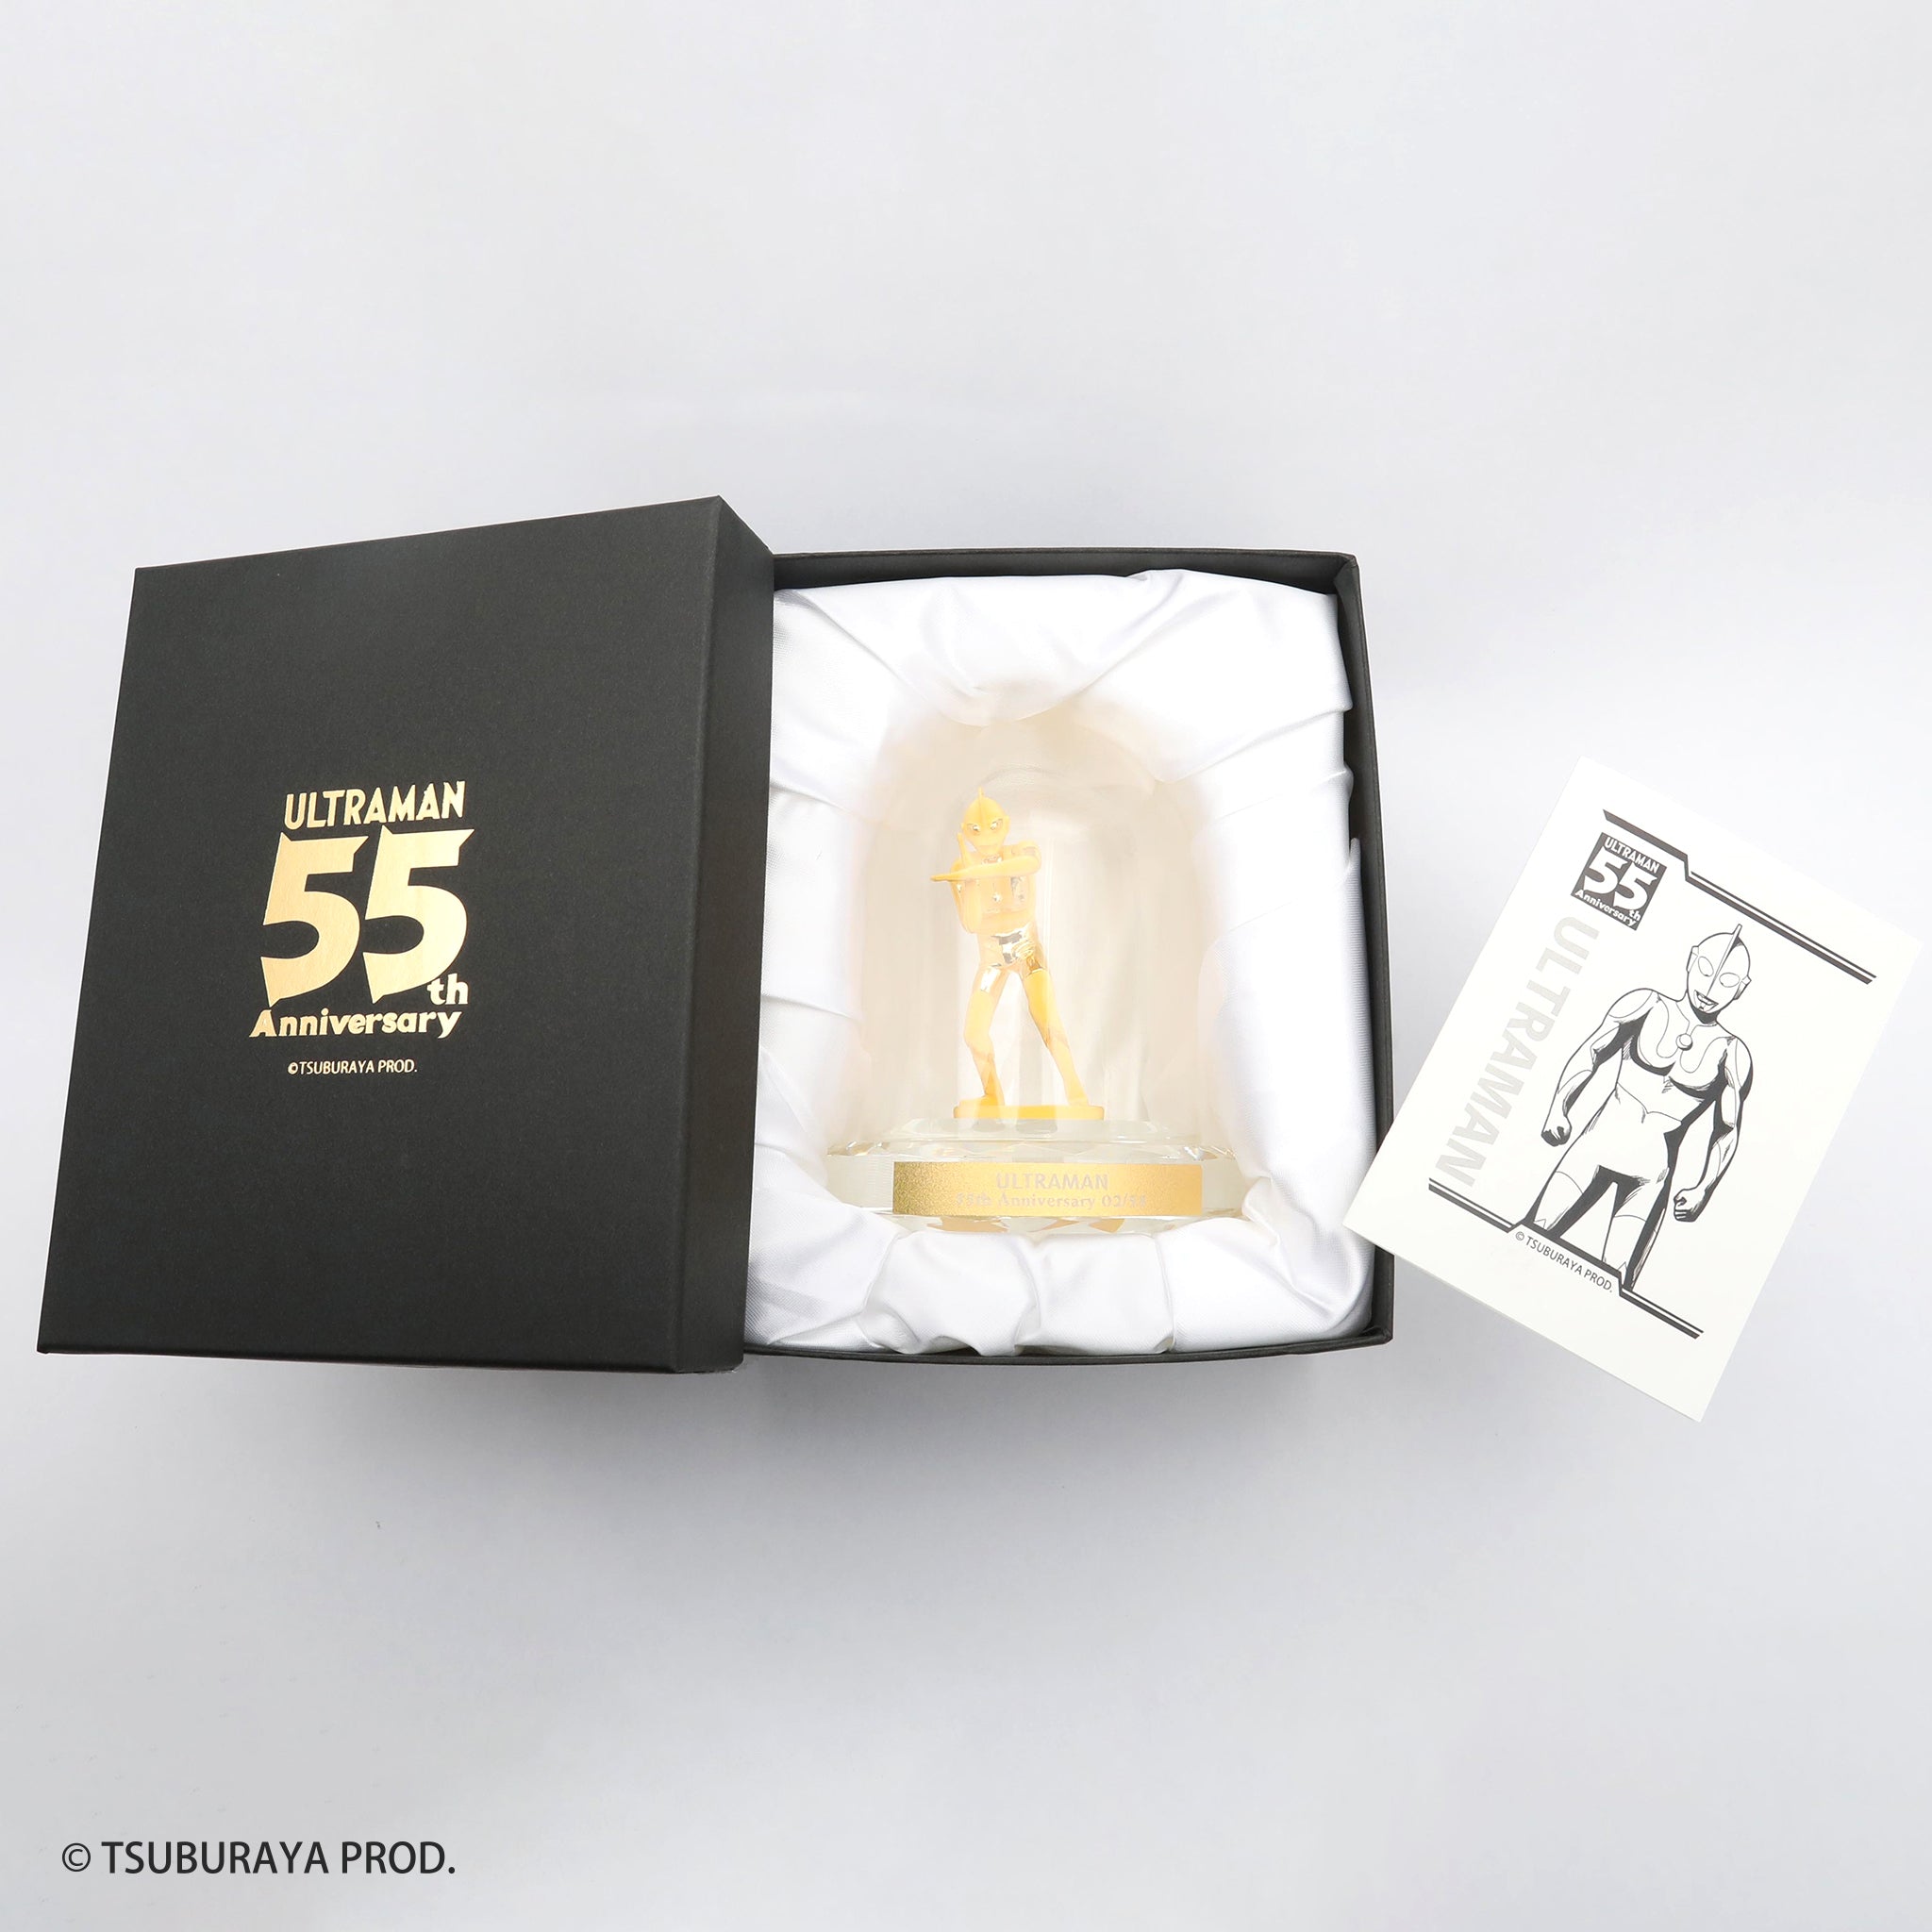 K24金製品(純金/ウルトラマン 55th Anniversary/フィギア/13g)